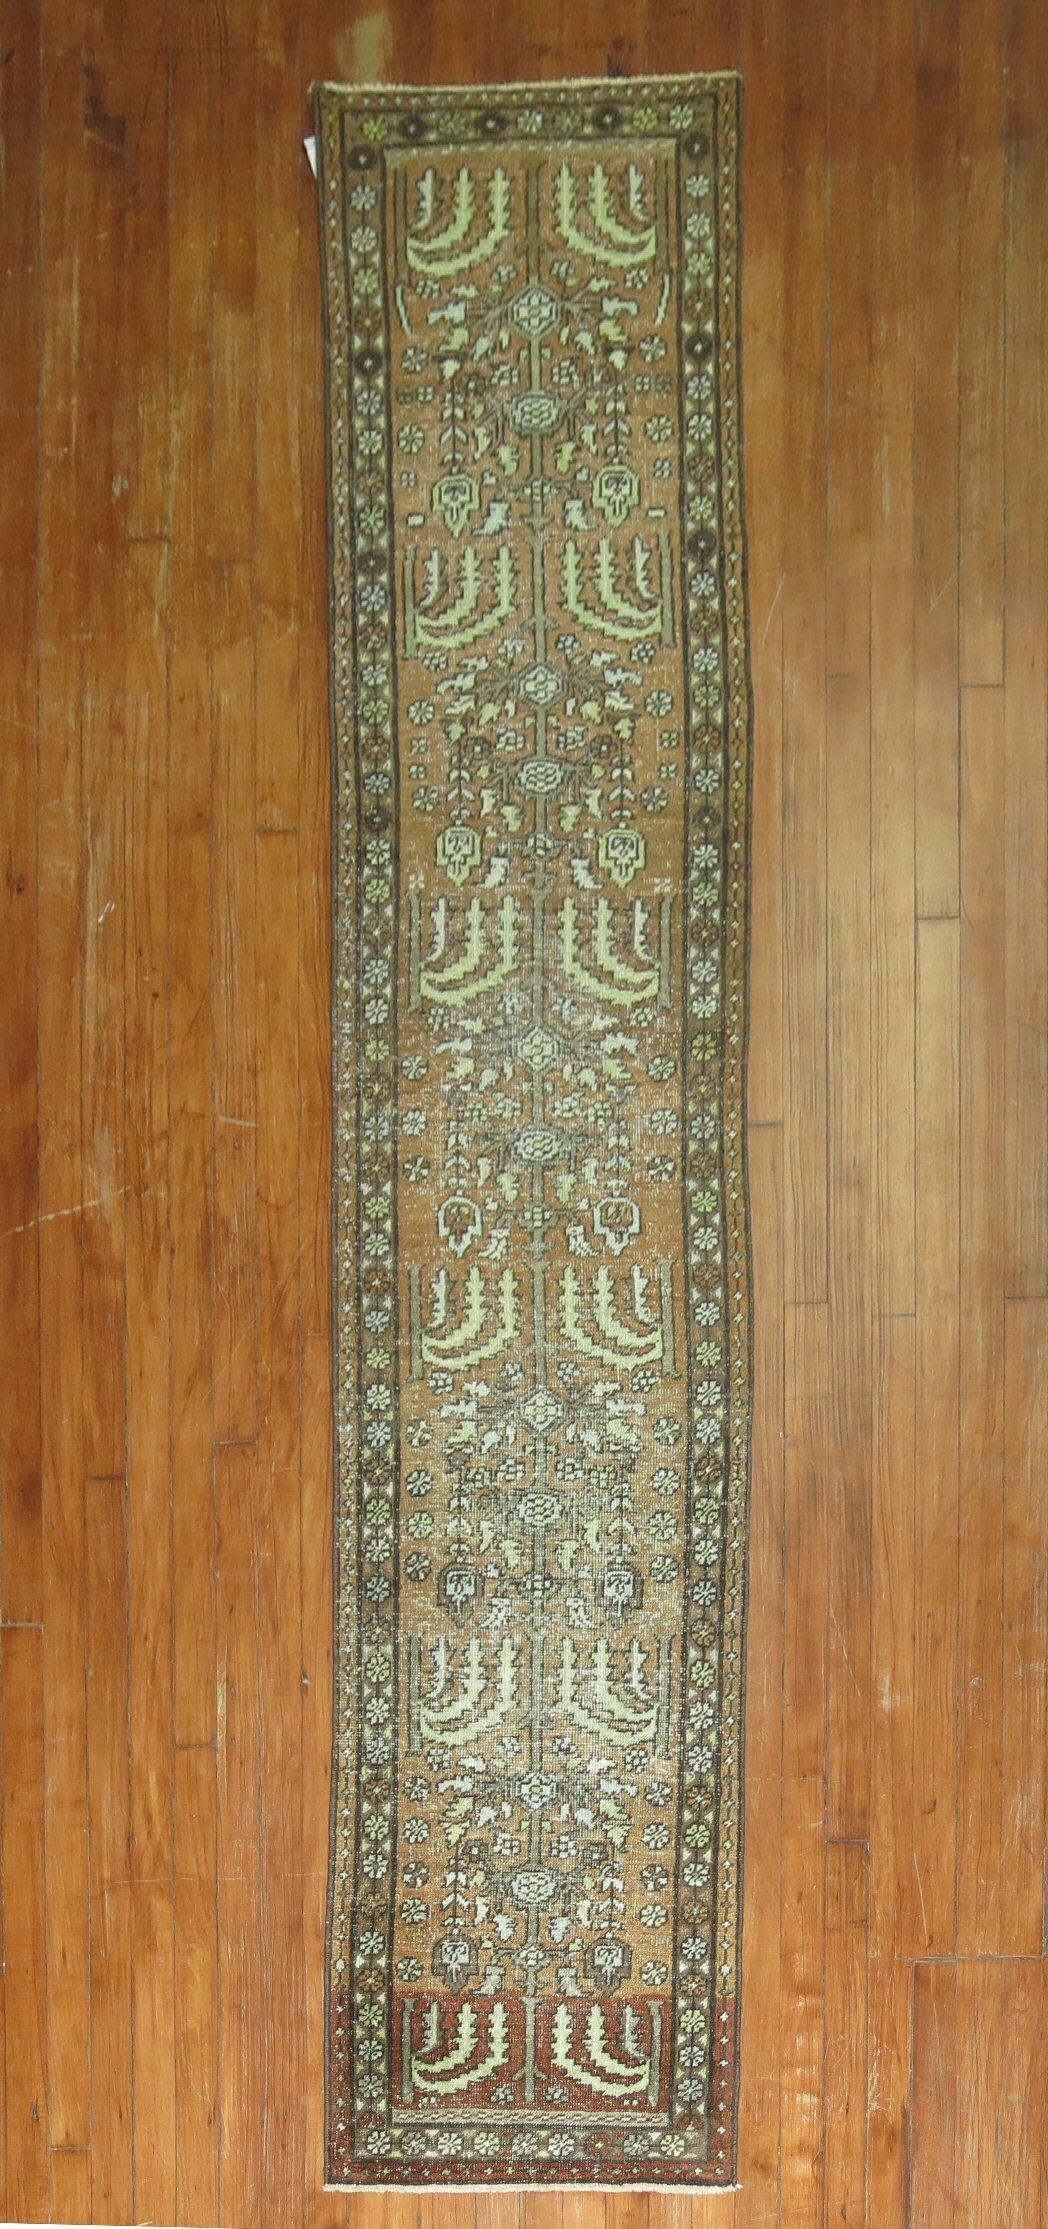 Chemin de table étroit persan Heriz du début du 20e siècle, en brun et vert.

Mesures : 1'10